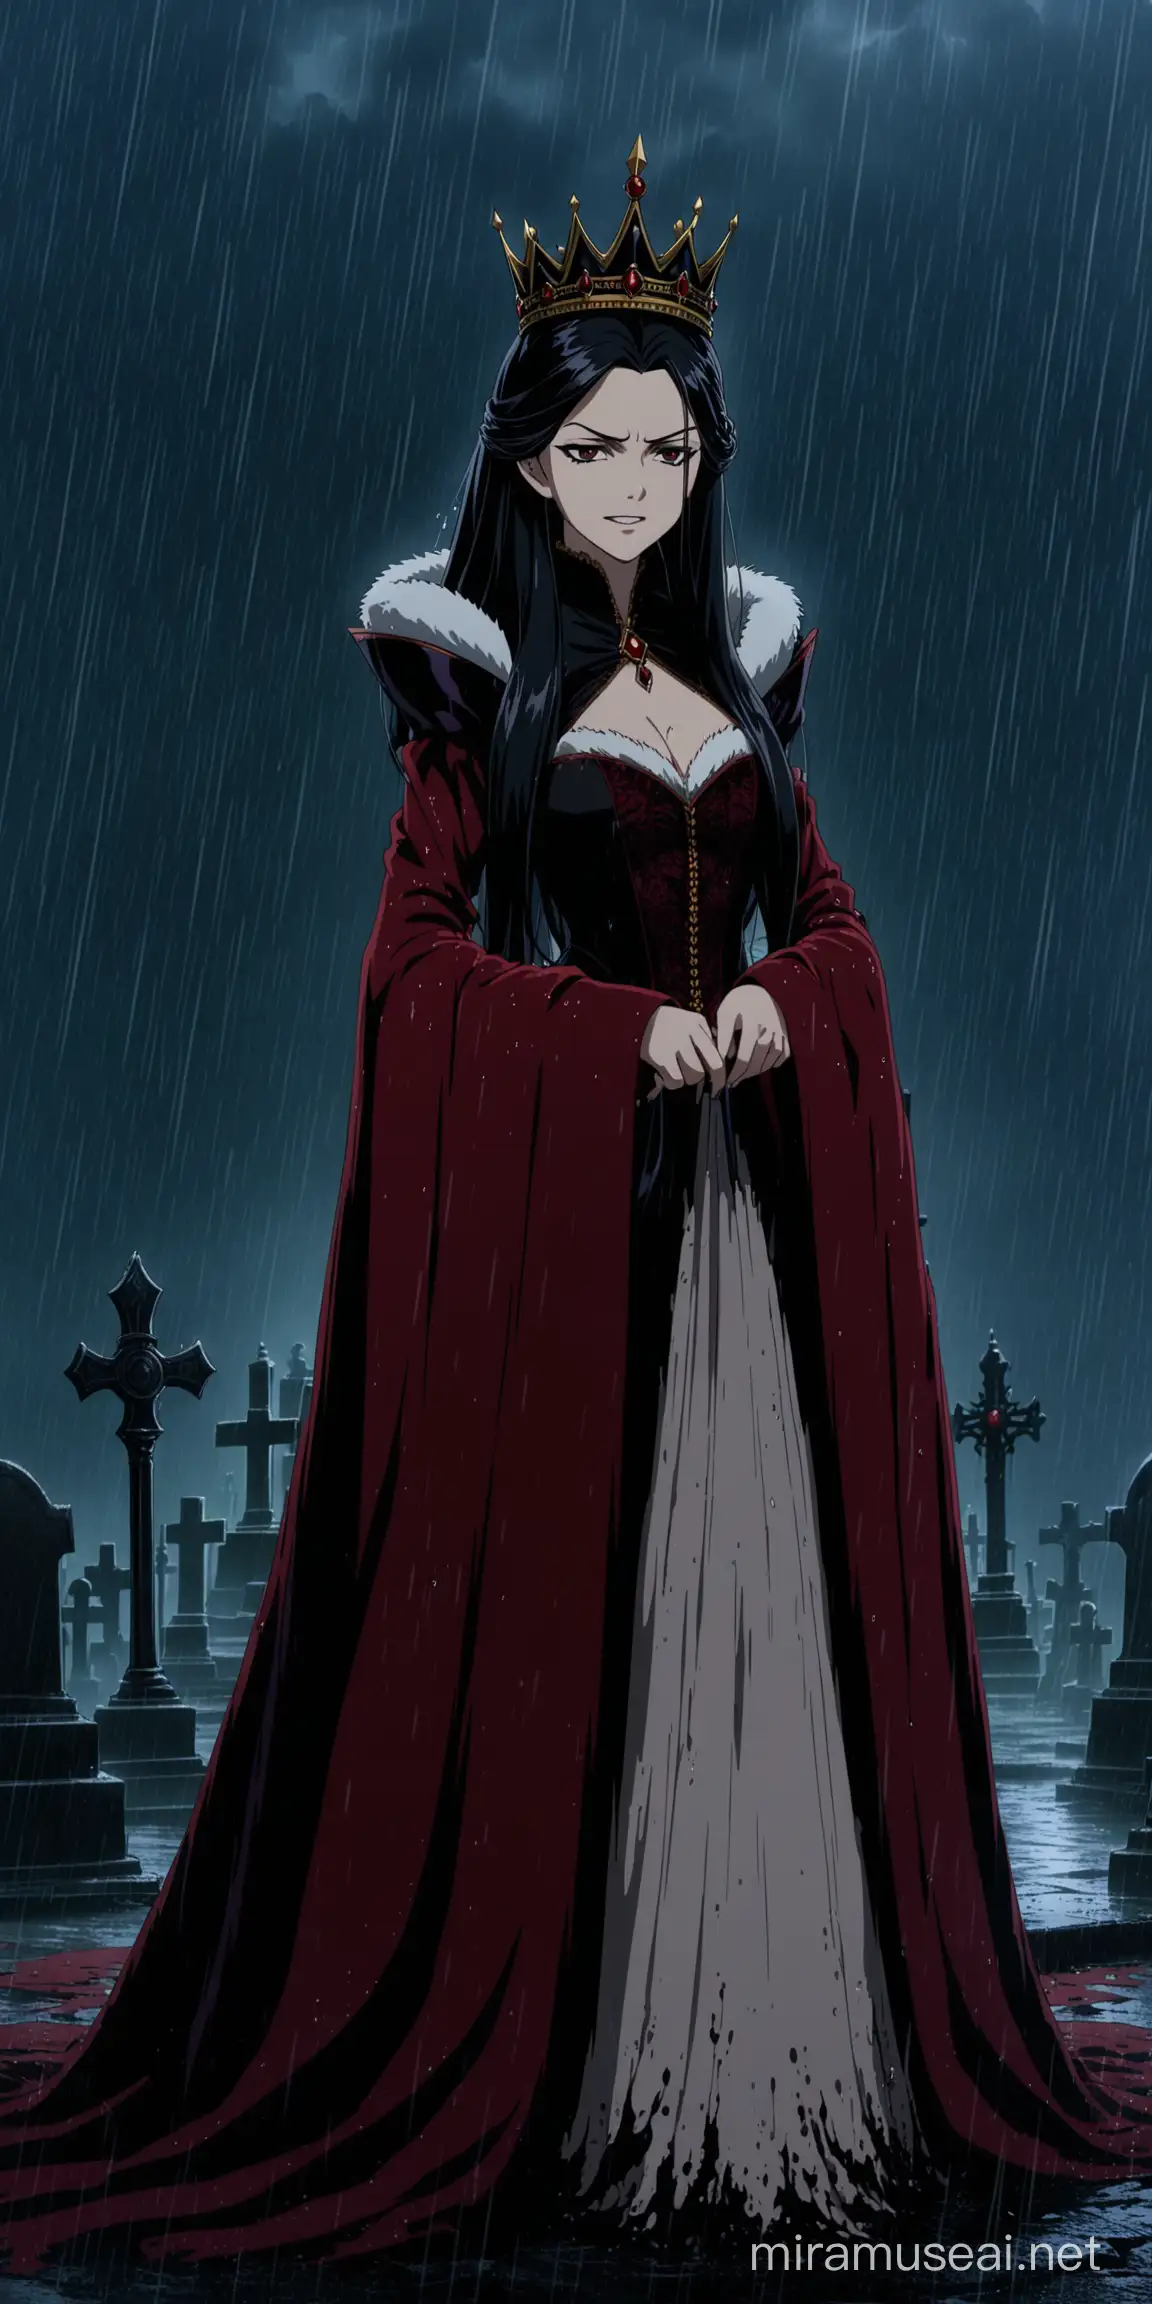 Sinister Evil Queen in Vermillion Victorian Attire Amidst Thunderstorm